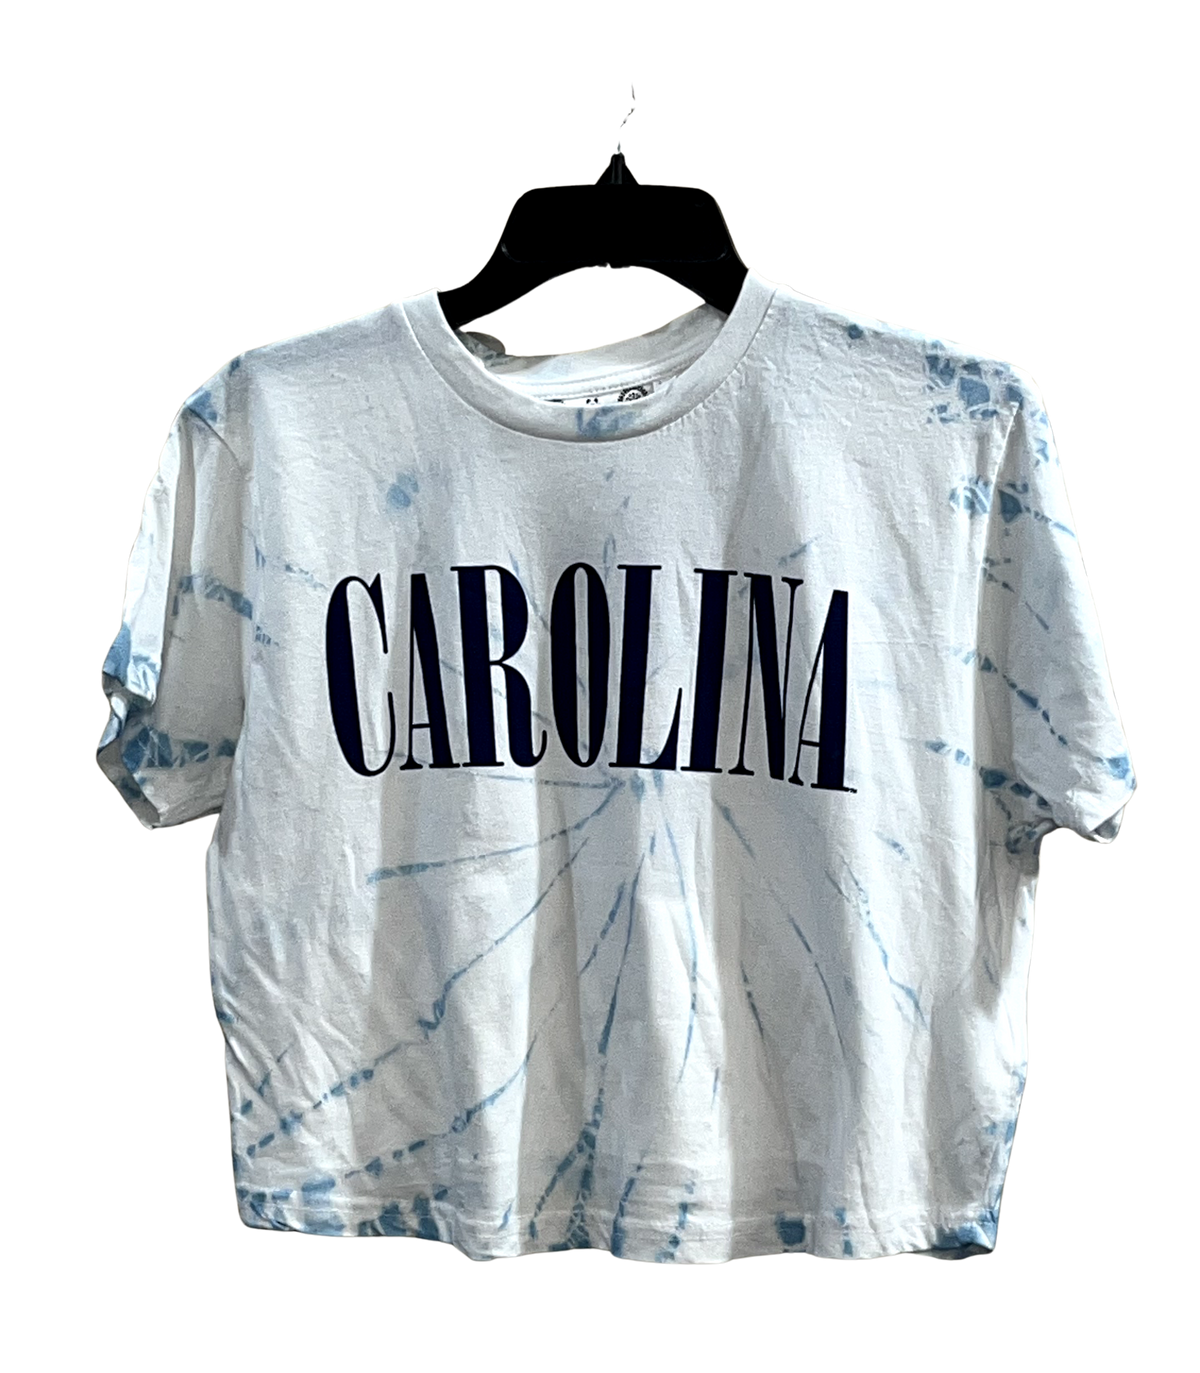 Classic Carolina - Women's Carolina Tie Dye Cropped Top